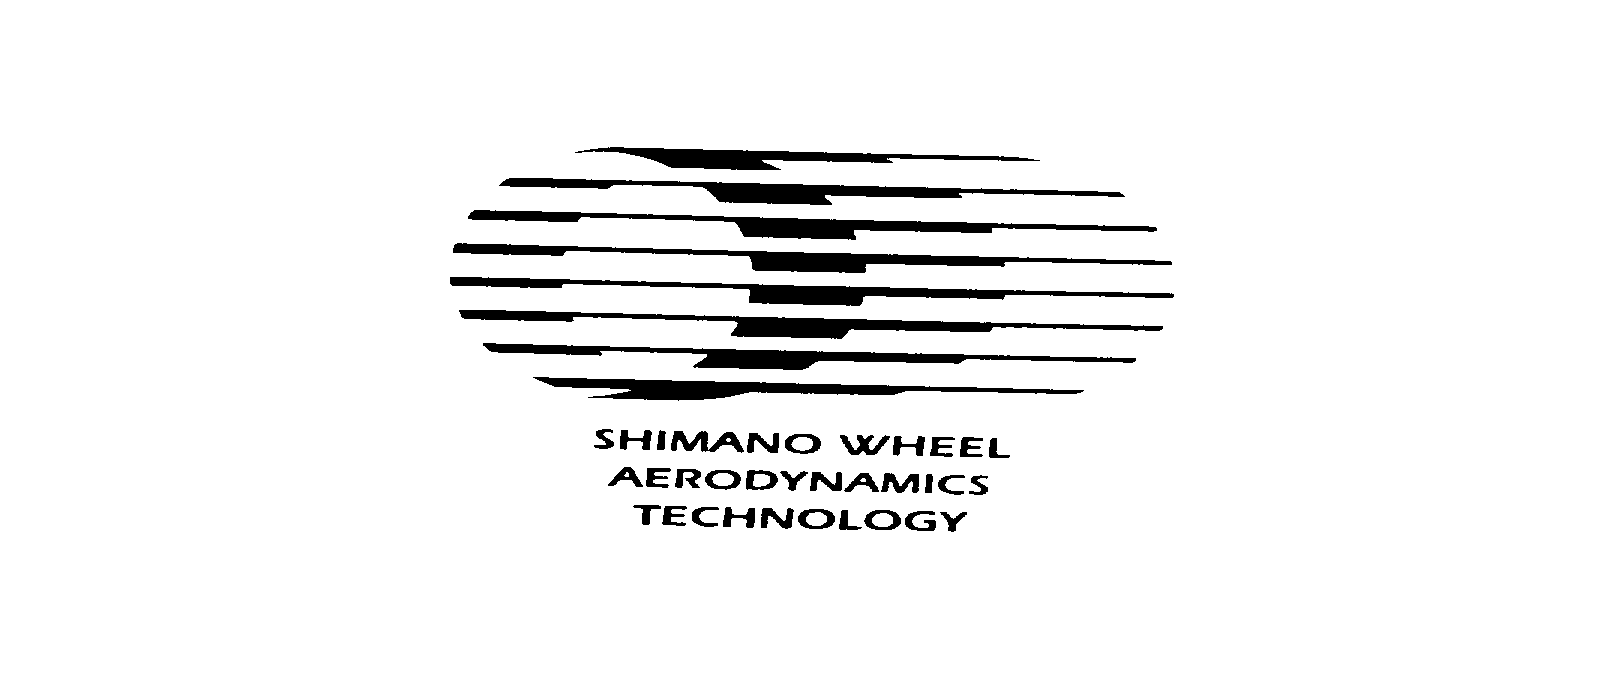  SHIMANO WHEEL AERODYNAMICS TECHNOLOGY